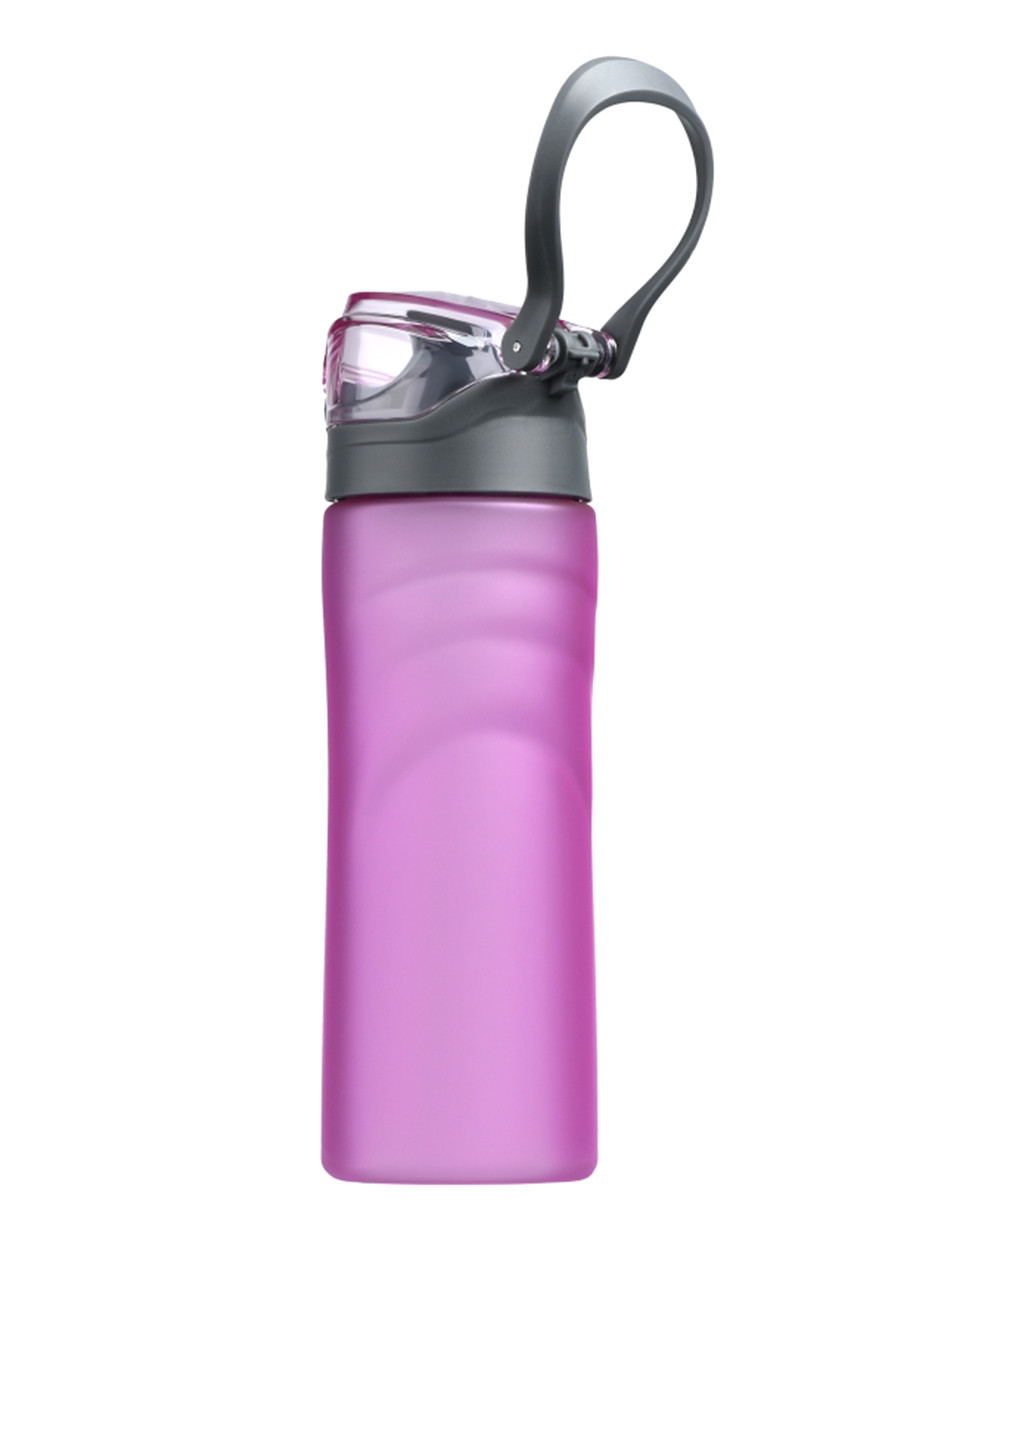 Бутылка для воды Ardesto 600 мл, розовая, пластик (AR2205PR) розовая